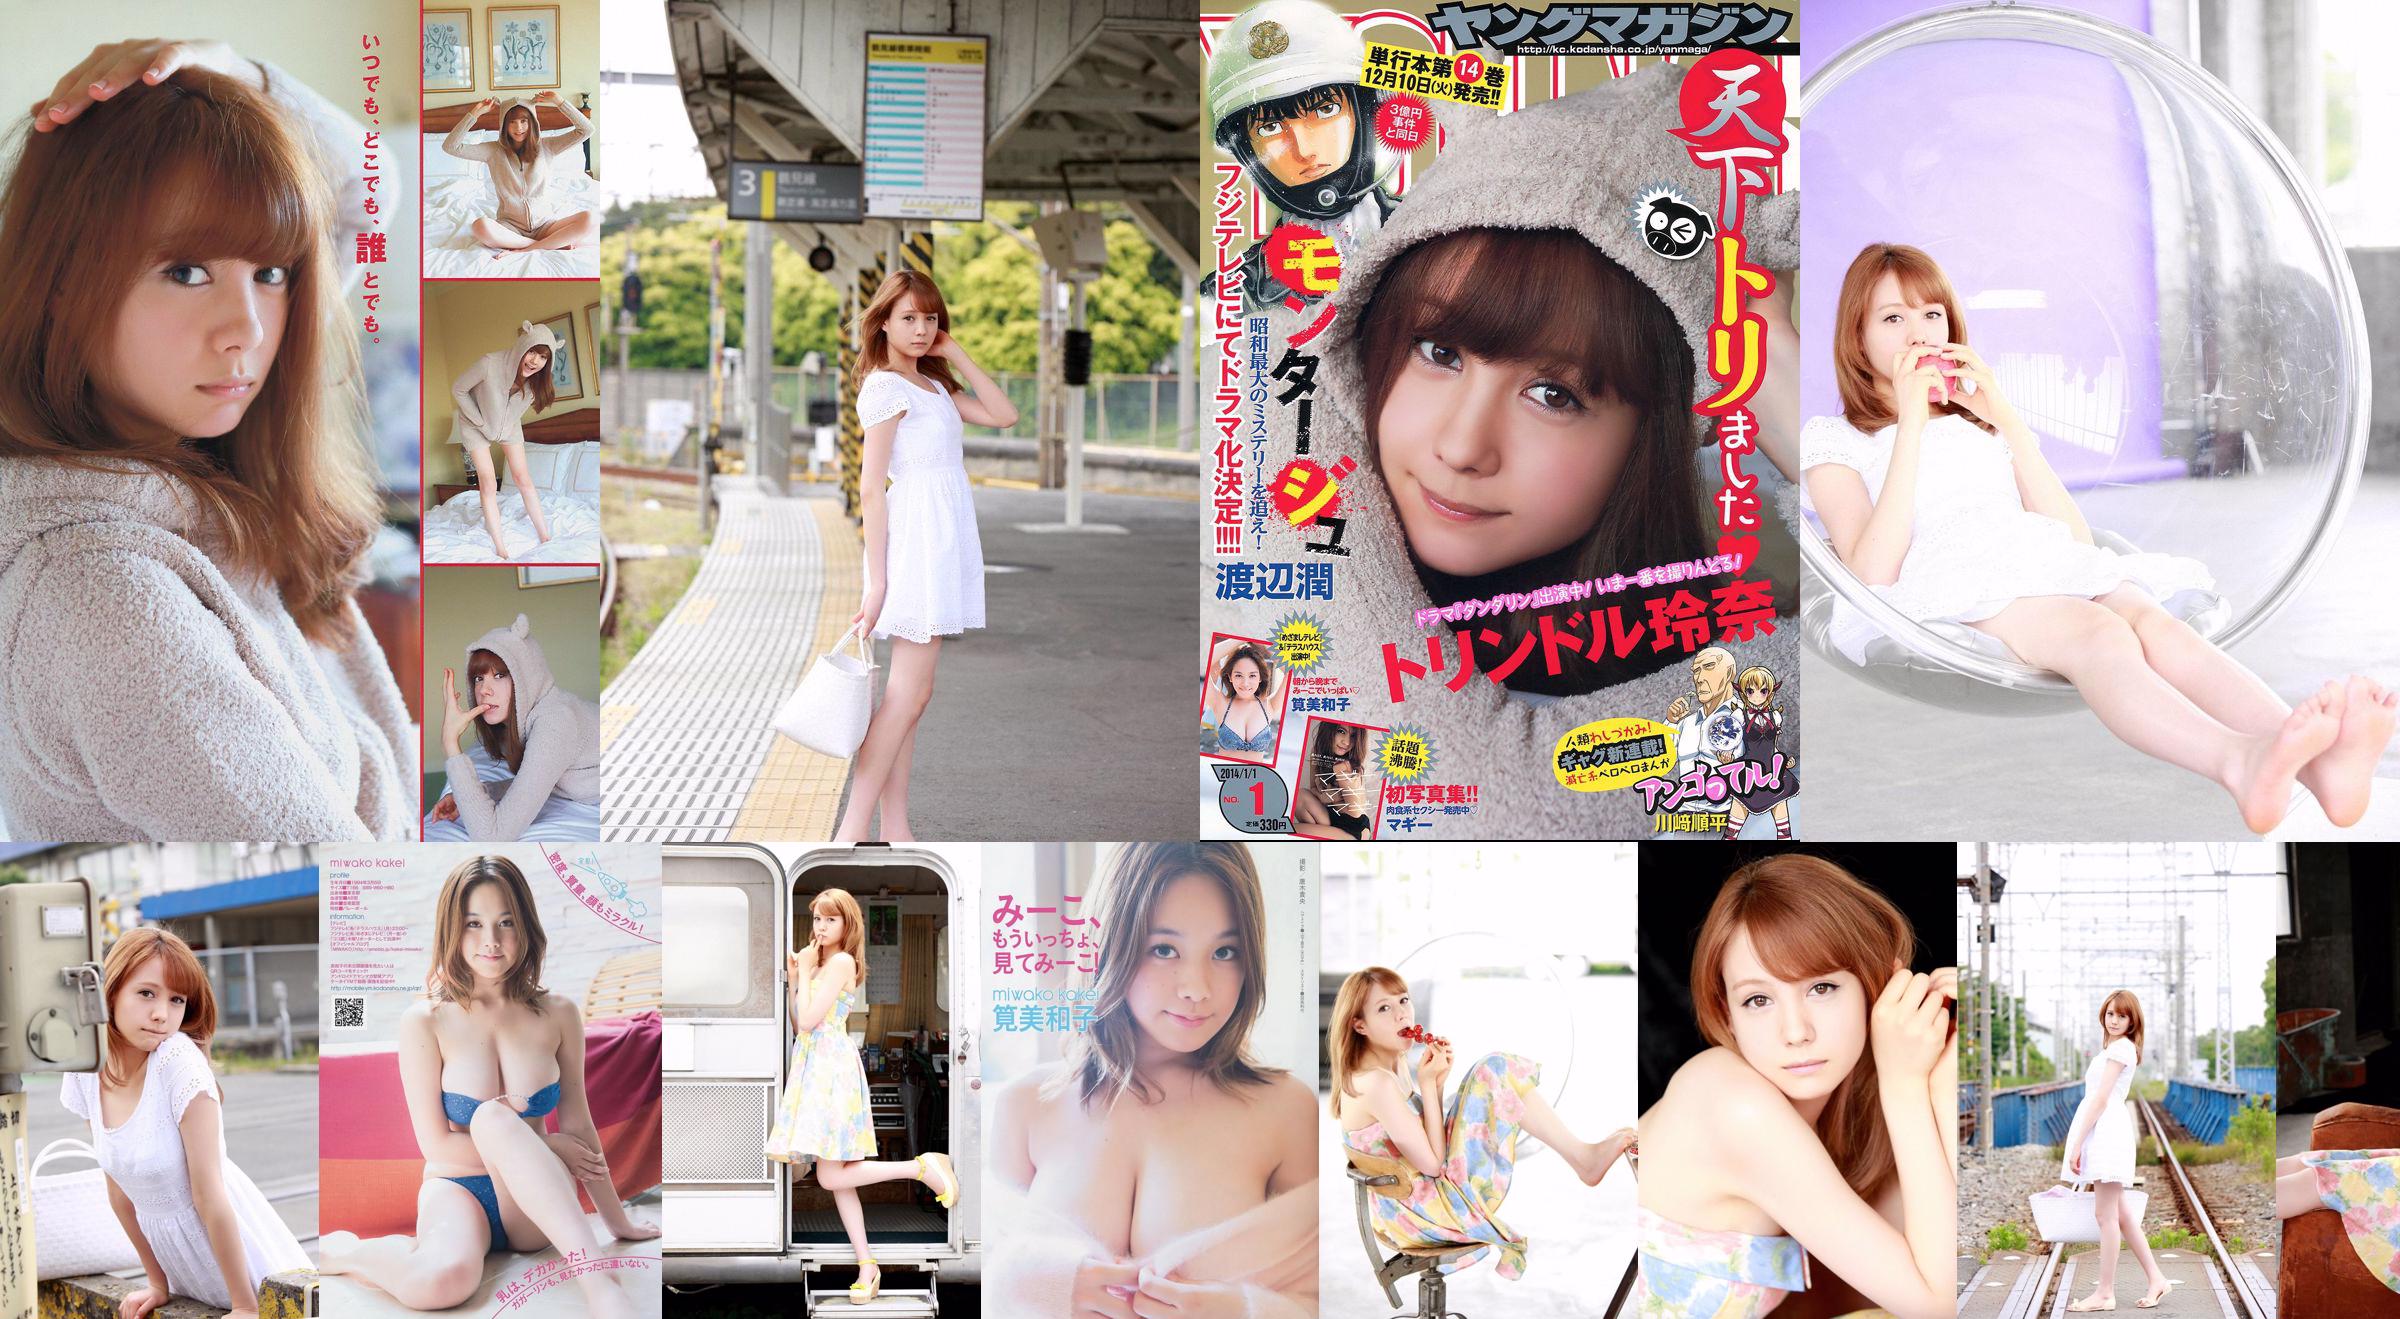 [Majalah Muda] Reina Triendl Maggie Miwako Kakei 2014 No. 01 Foto No.86091d Halaman 2